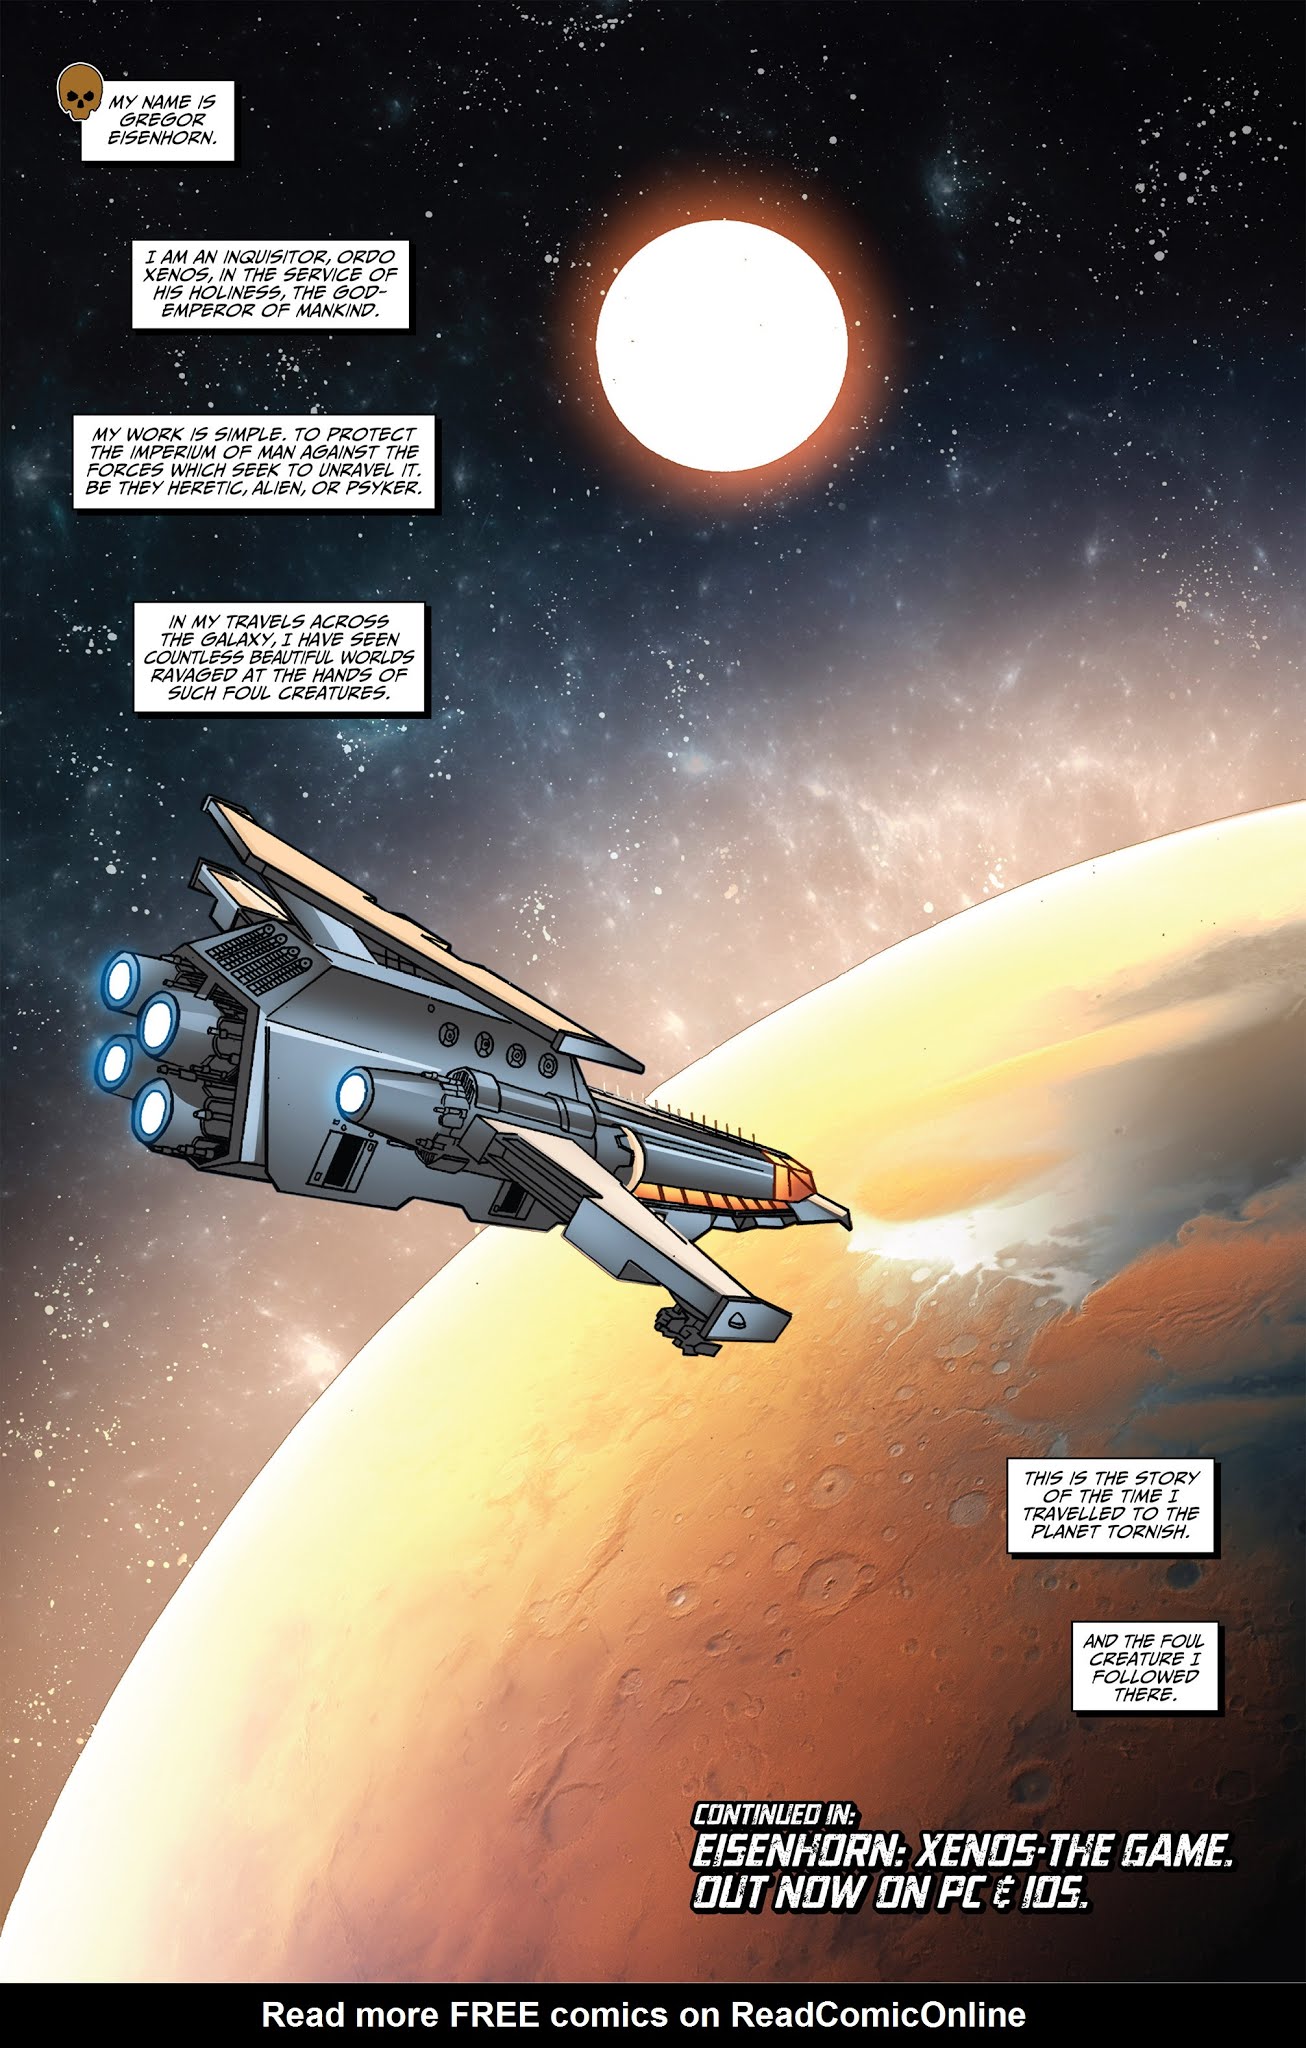 Read online Eisenhorn: Xenos comic -  Issue # Full - 22